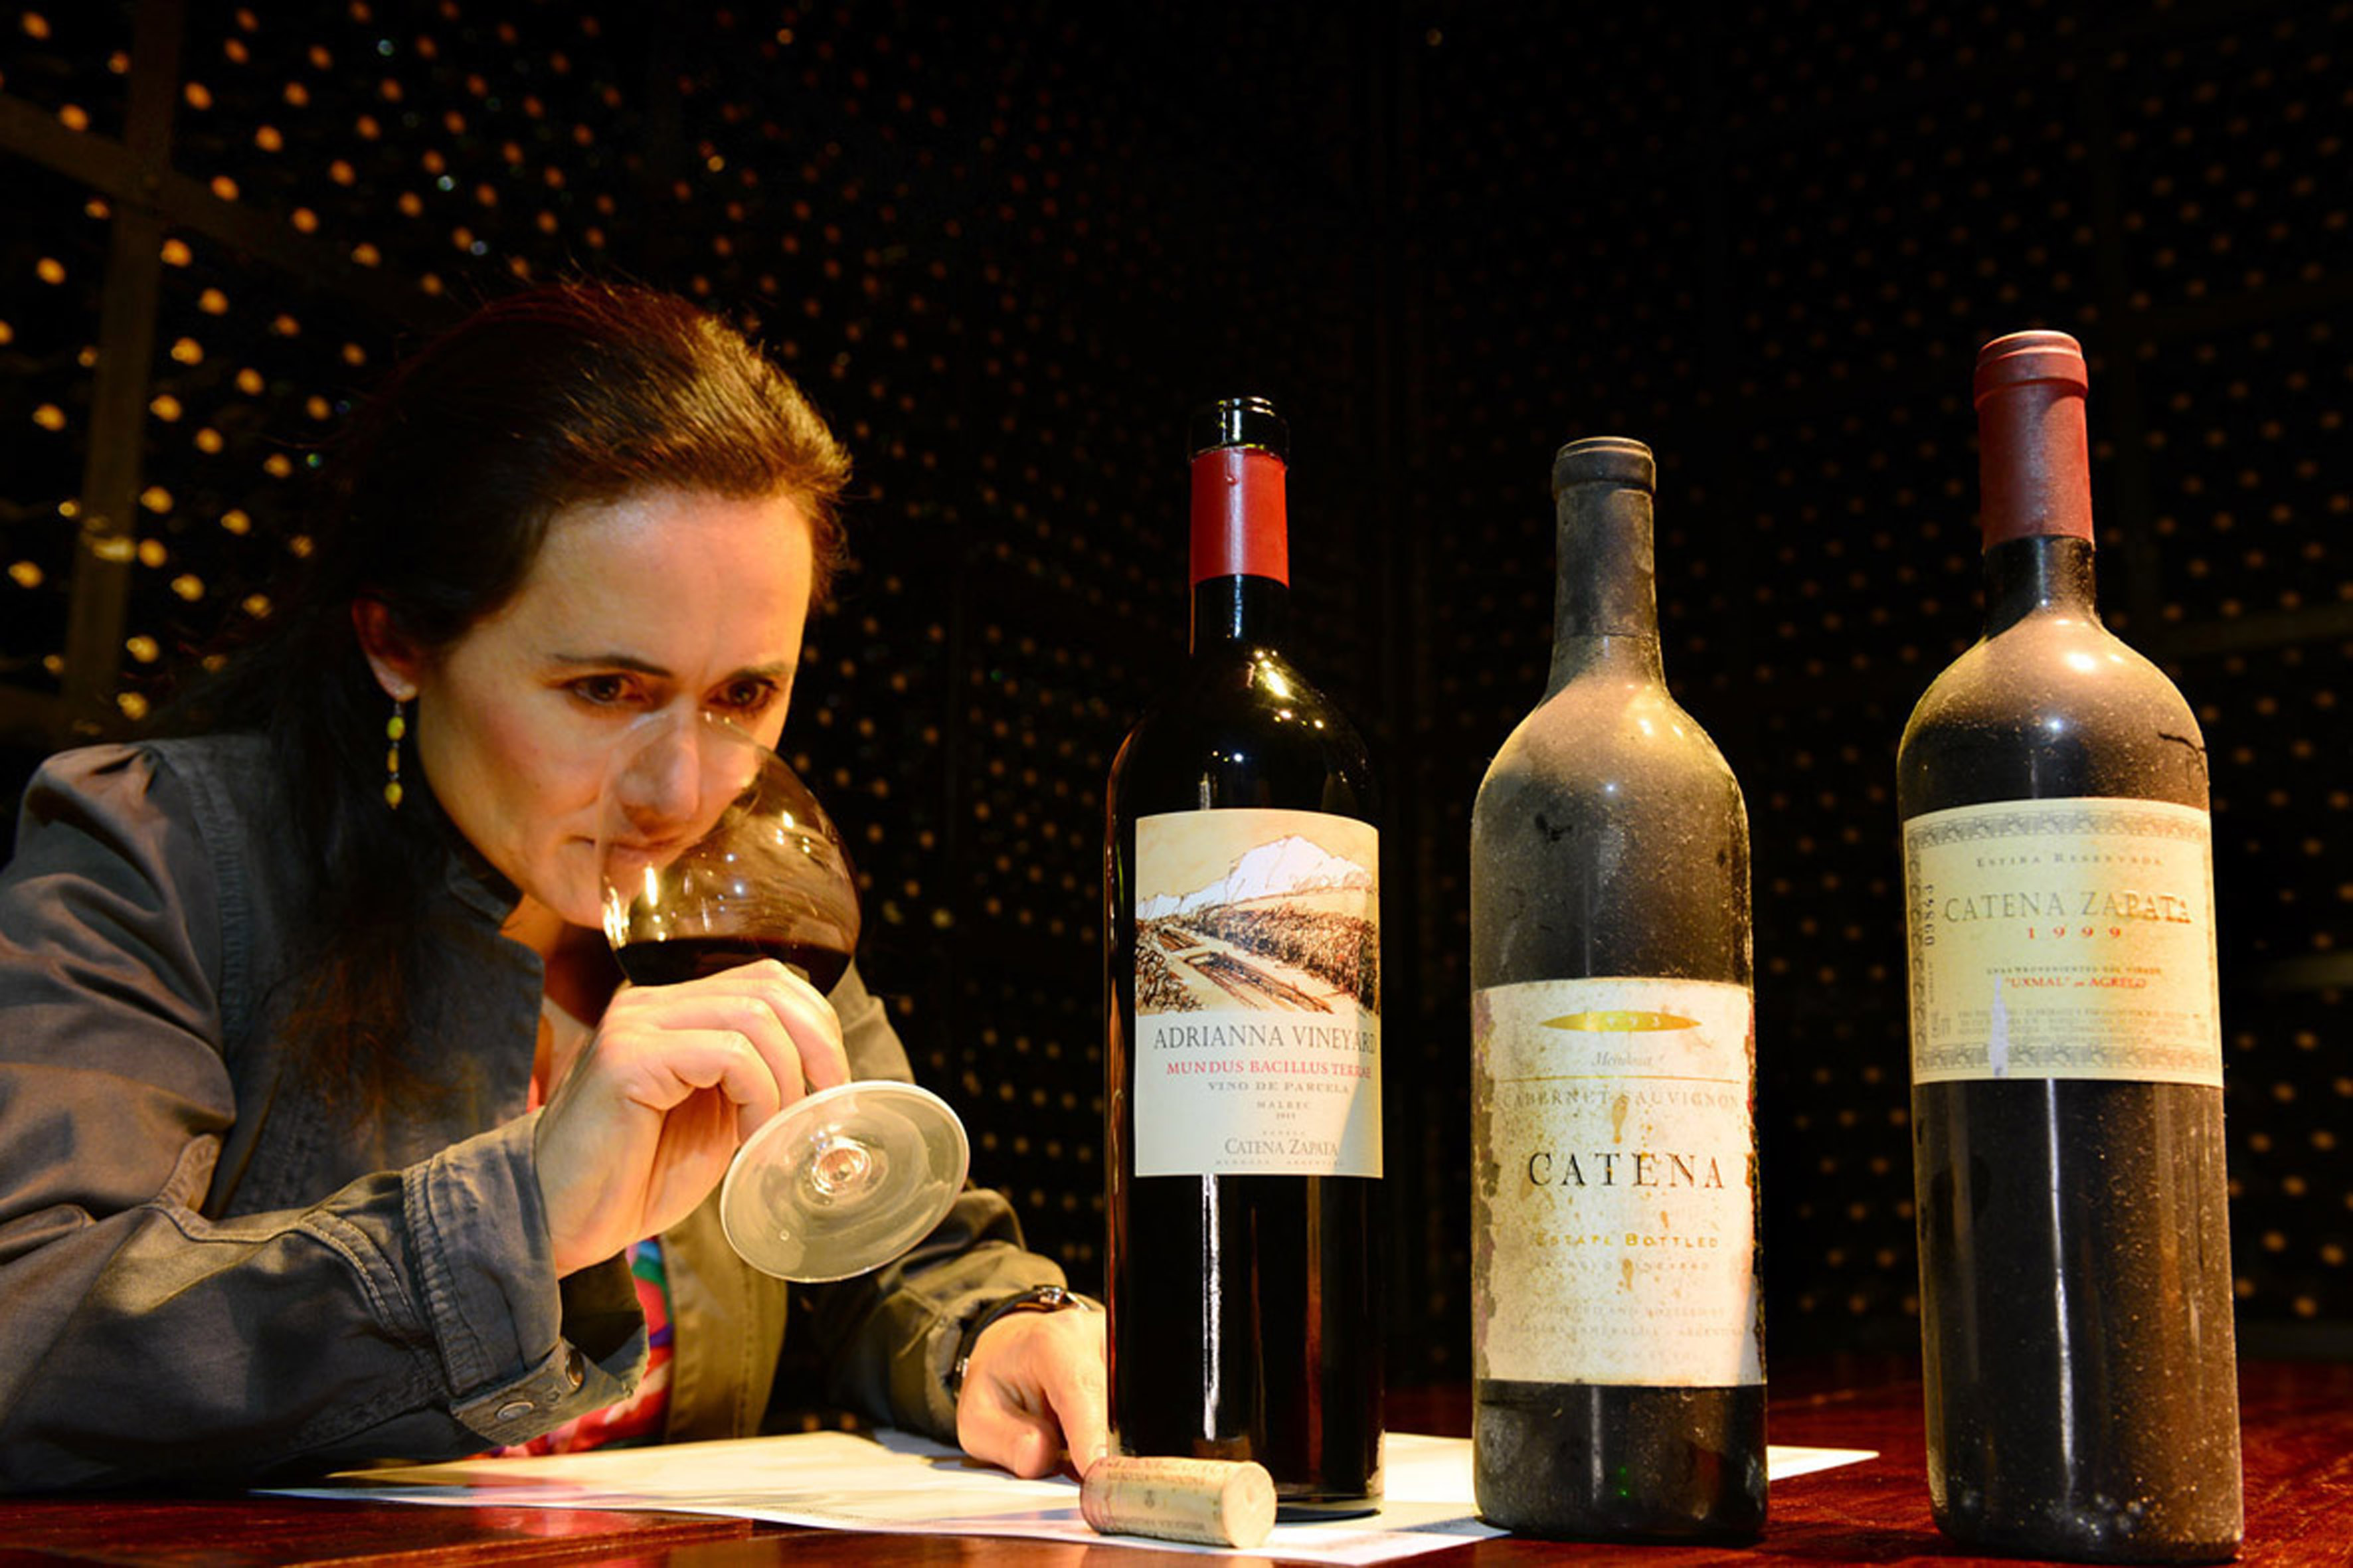 Exclusivo: Laura Catena dá uma aula de vinho em entrevista apaixonante